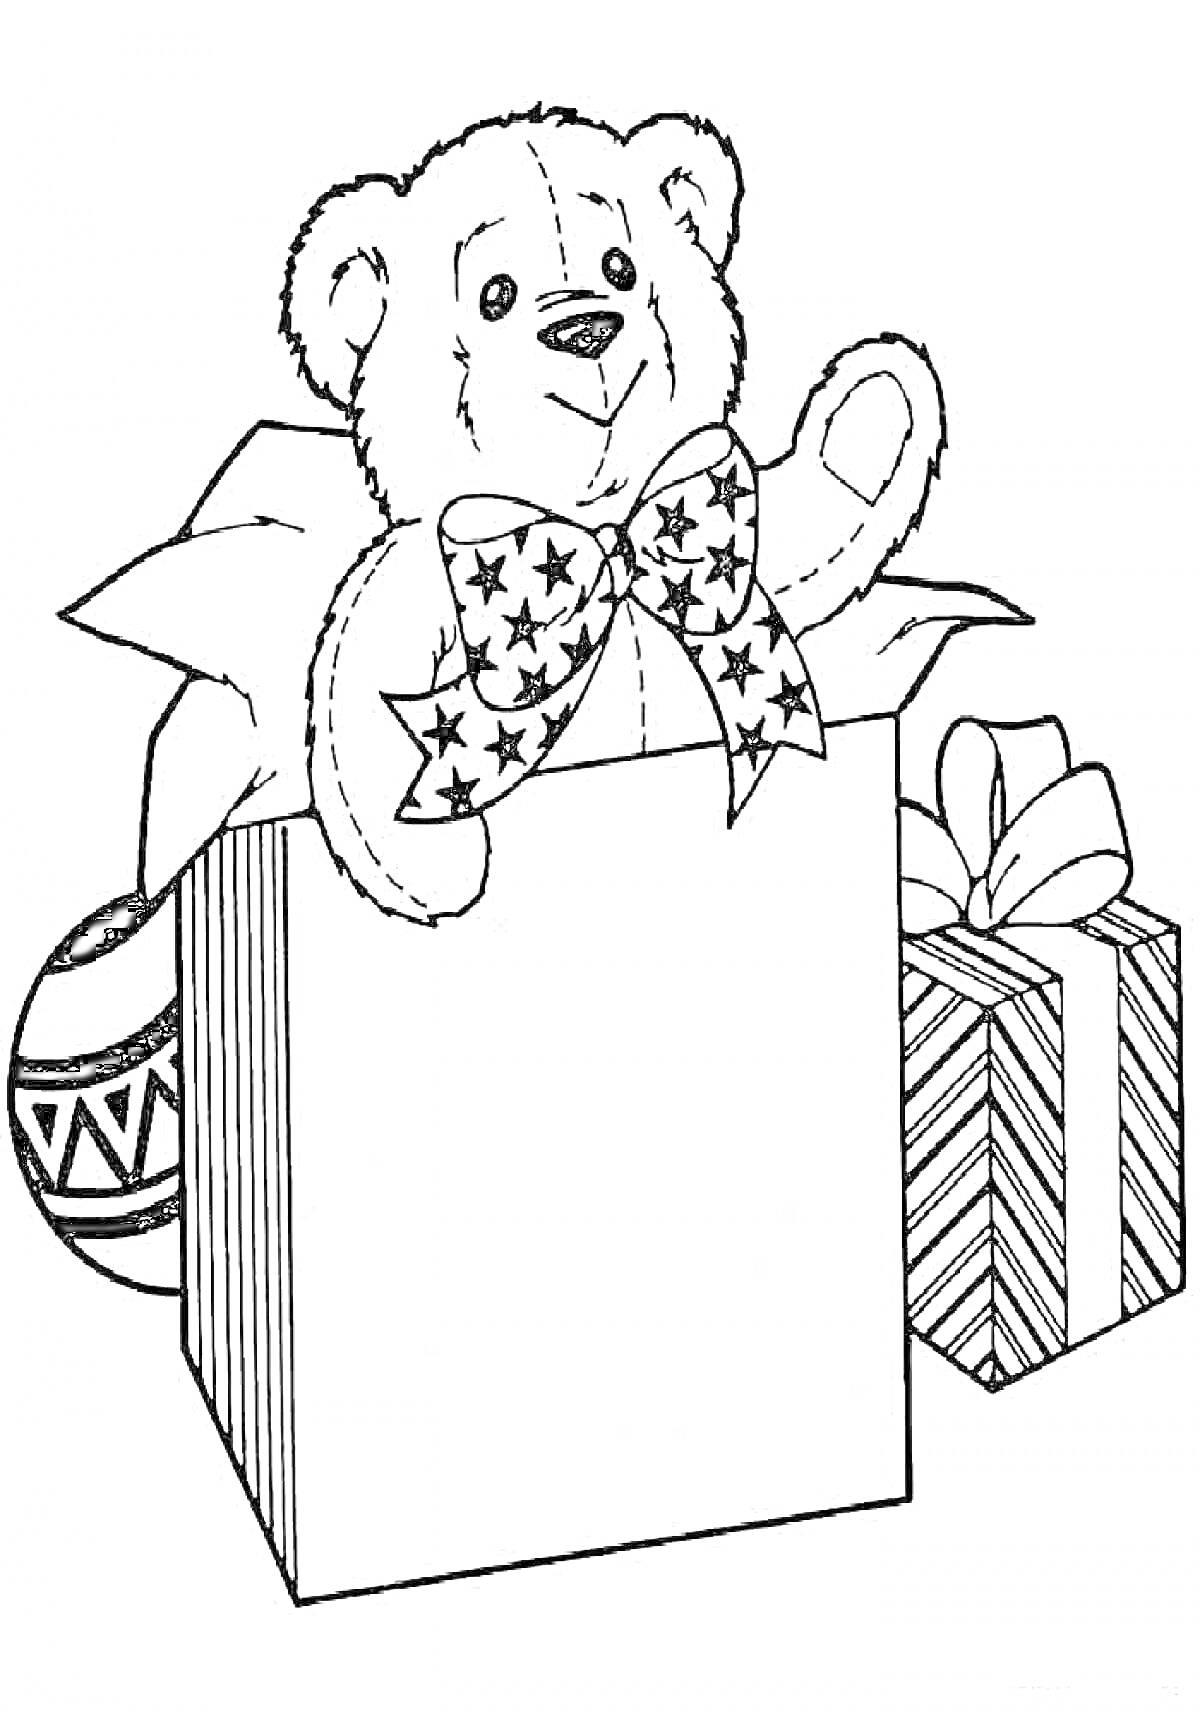 Раскраска Мишка Тедди в подарочной коробке с бантом, шар с узорами и завернутый подарок с бантом